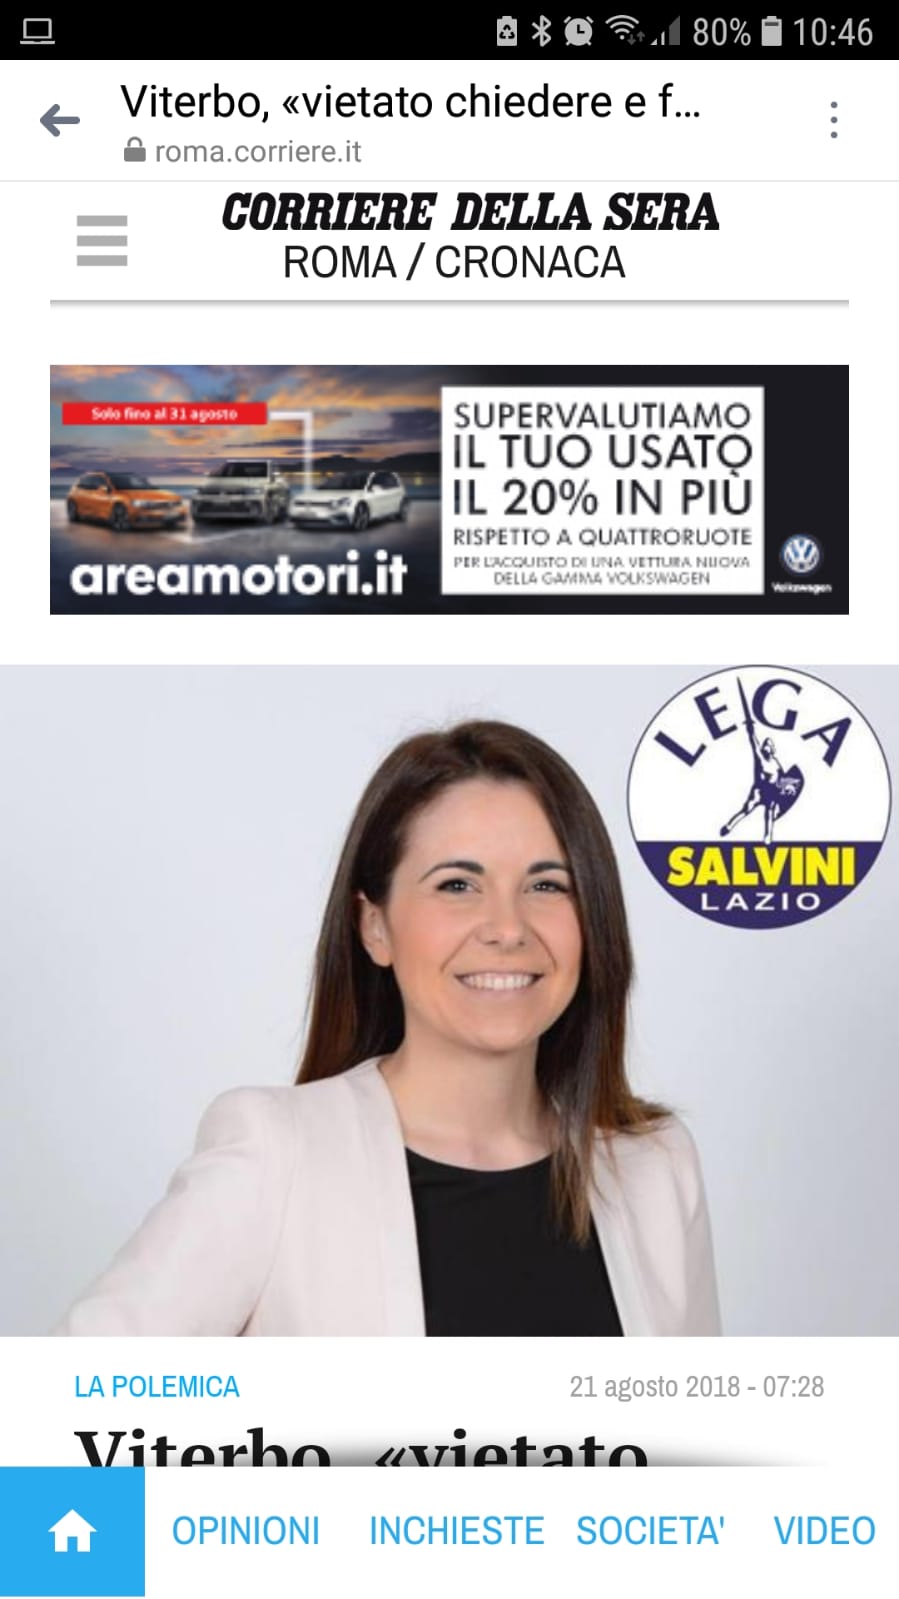 Viterbo in Italia: il falso scoop del Corriere della Sera sul “caso Nunzi”, l’unica che ci guadagna è l’assessore